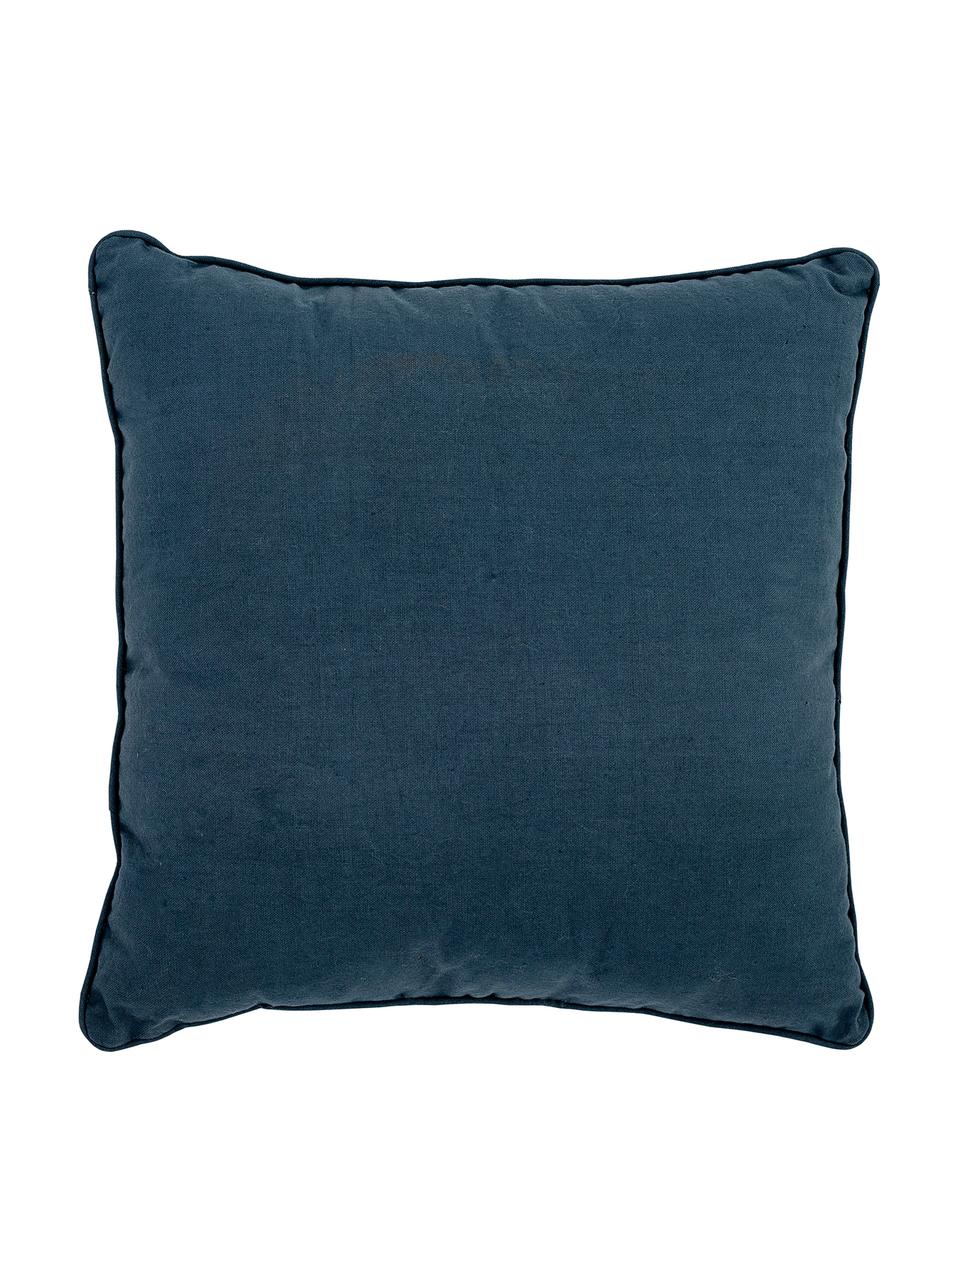 Poduszka Hero, z wypełnieniem, Tapicerka: 70 % bawełna, 30 % polies, Niebieski, S 40 x D 40 cm